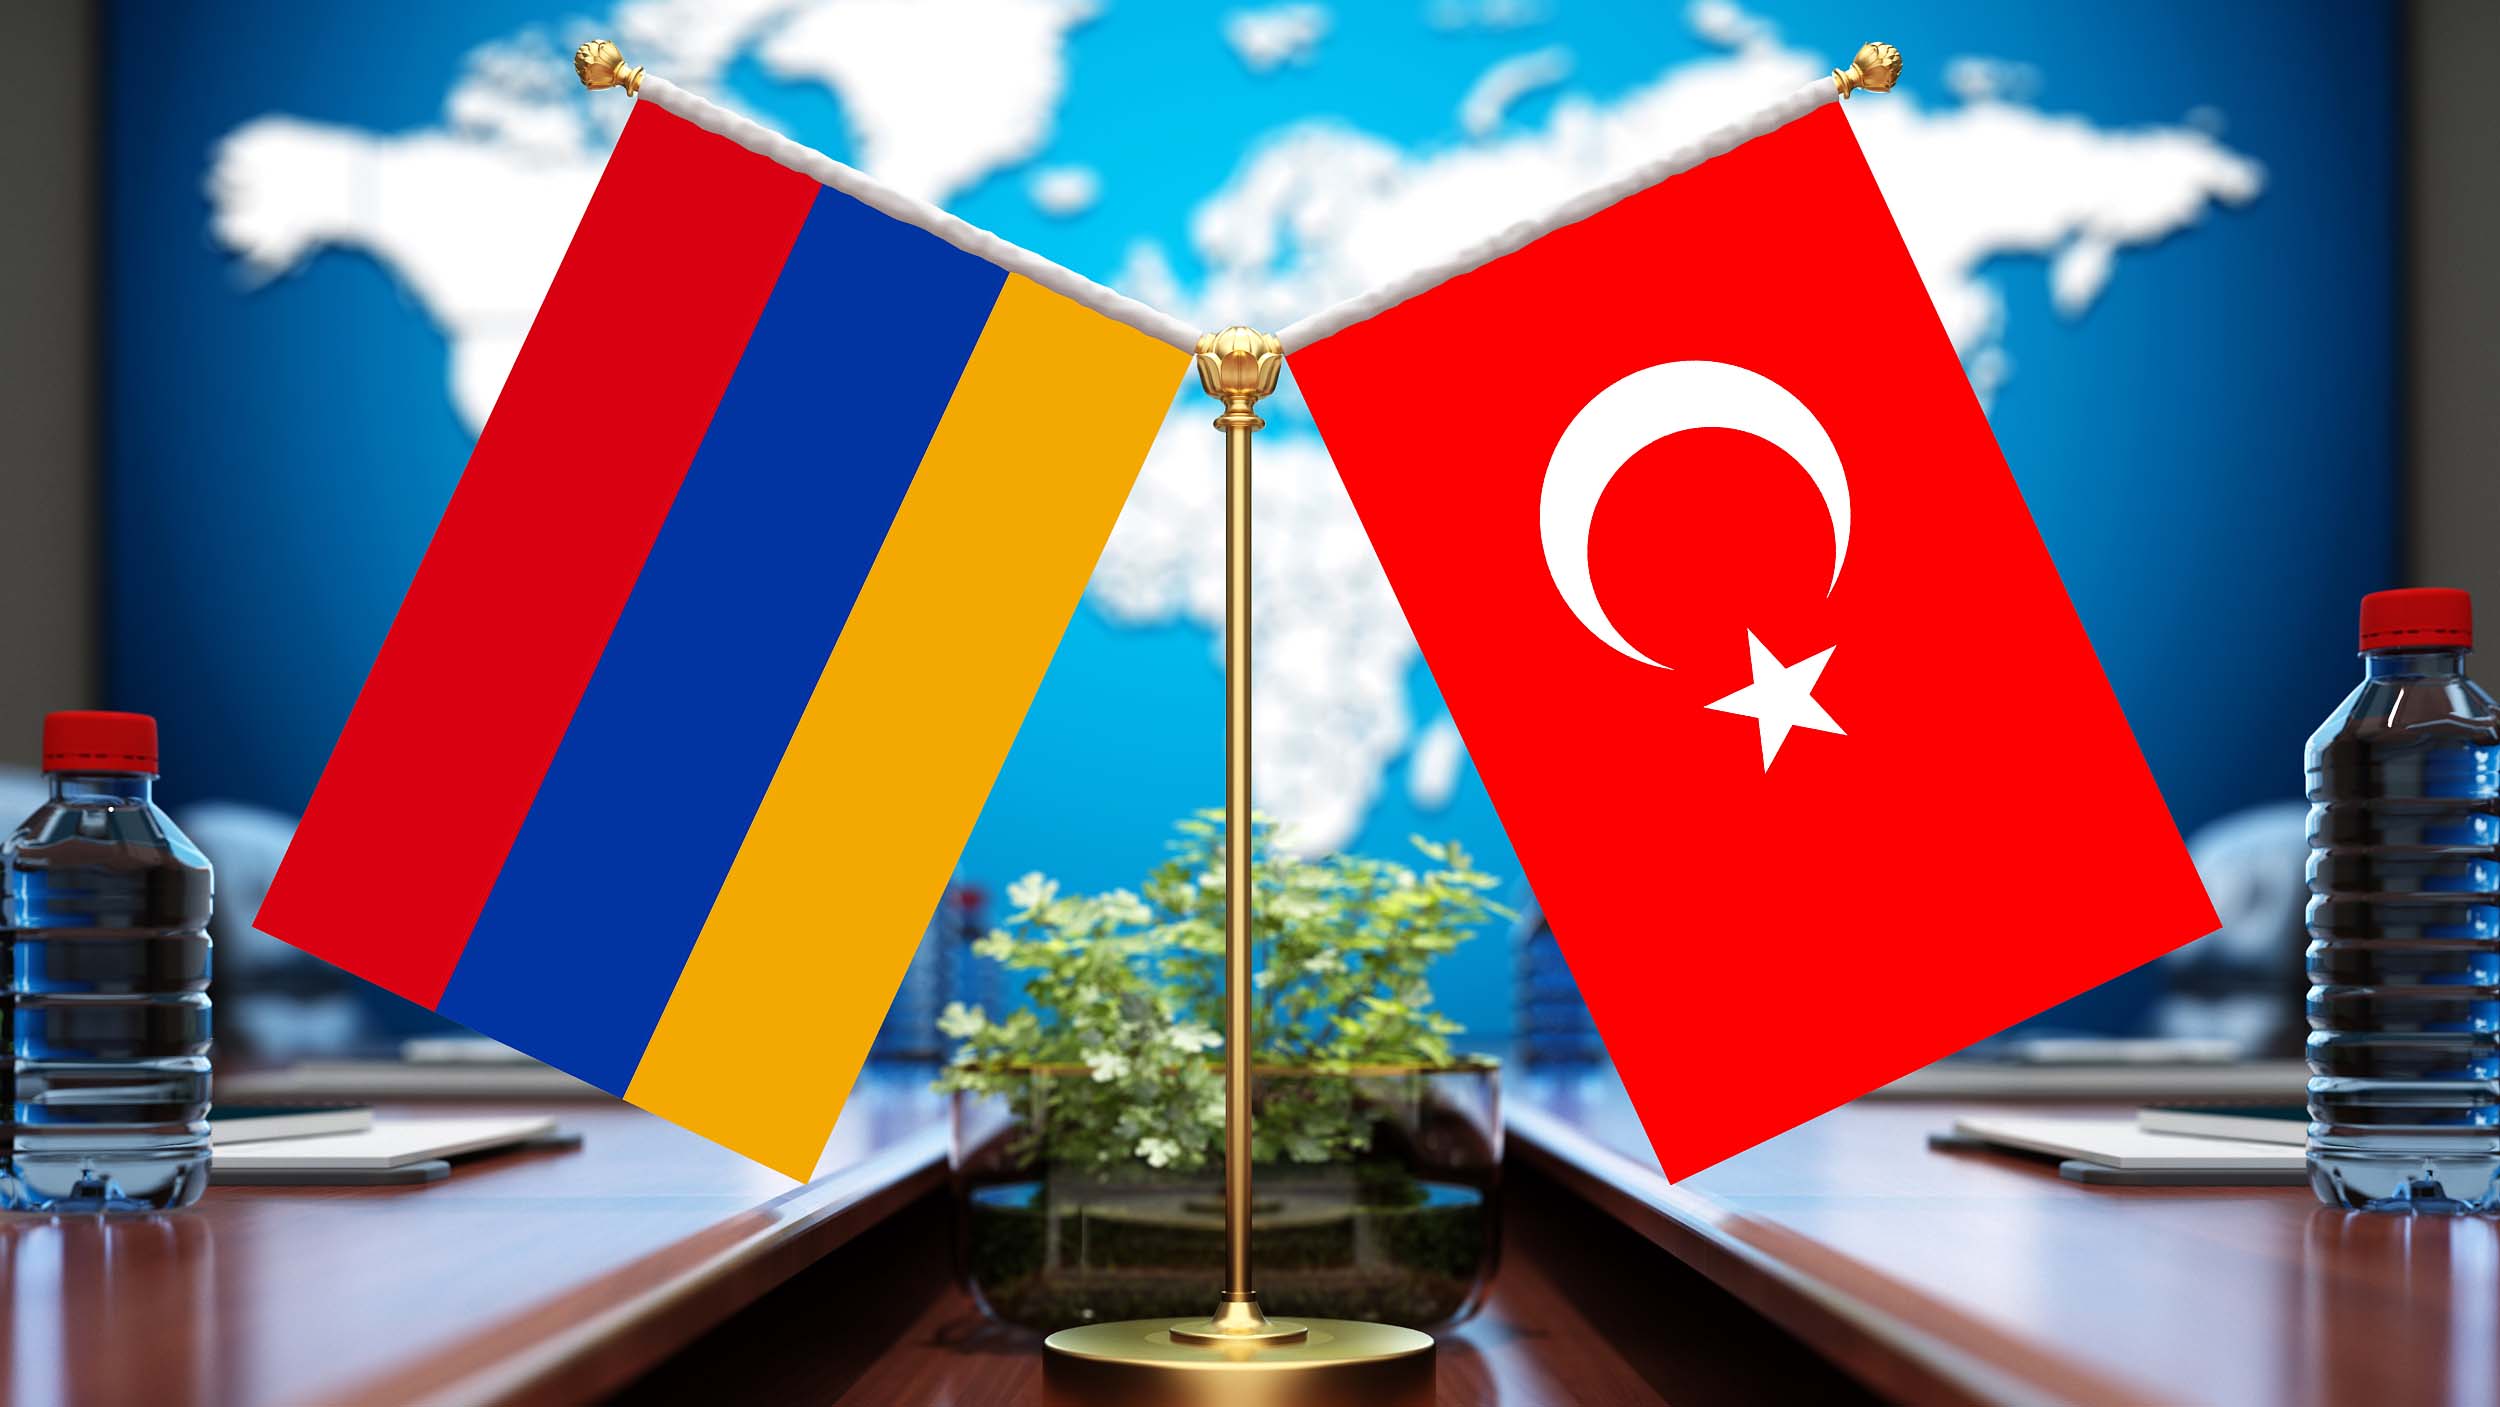 Տնտեսությունների մասշտաբները համեմատելի չեն,Թուրքիան պարզապես կարող է կուլ տալ Հայաստանին, հետևաբար 2երկրների միջև լուրջ մերձեցման սպասել չարժե